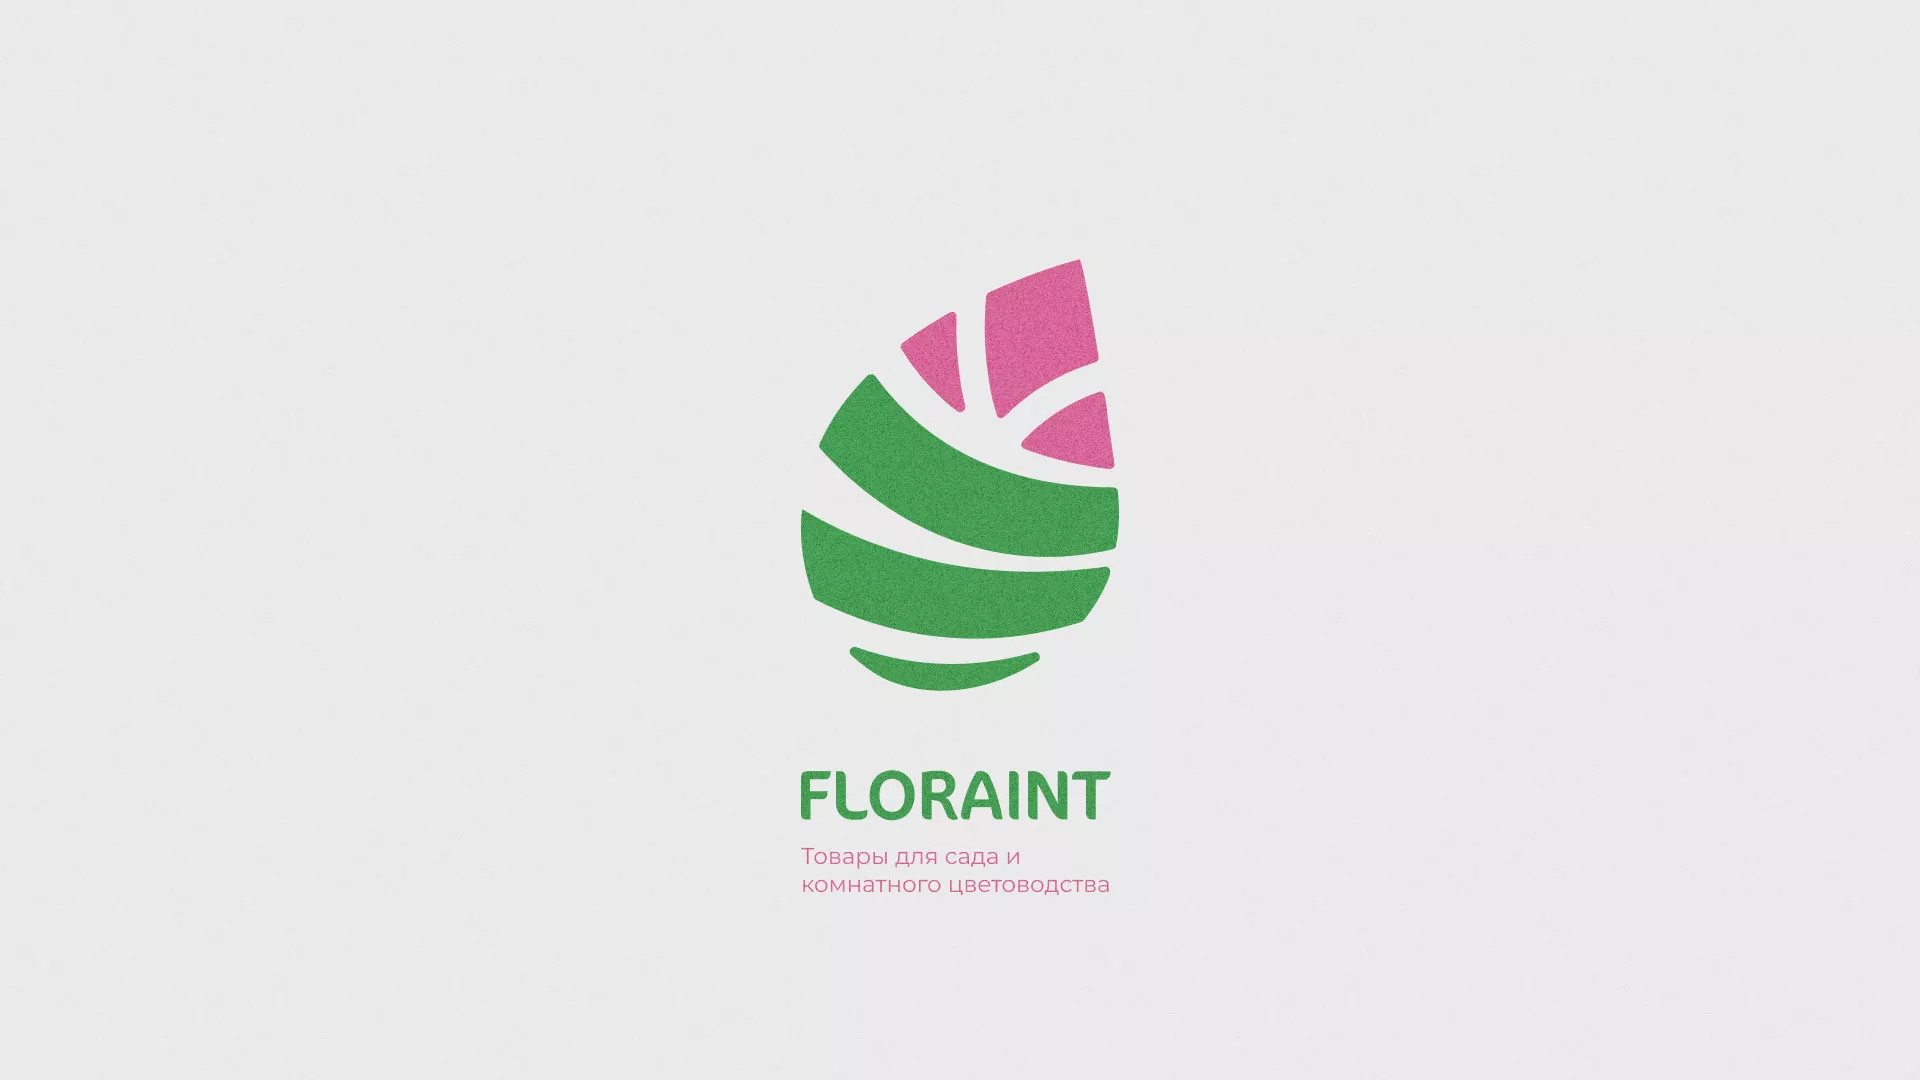 Разработка оформления профиля Instagram для магазина «Floraint» в Брянске